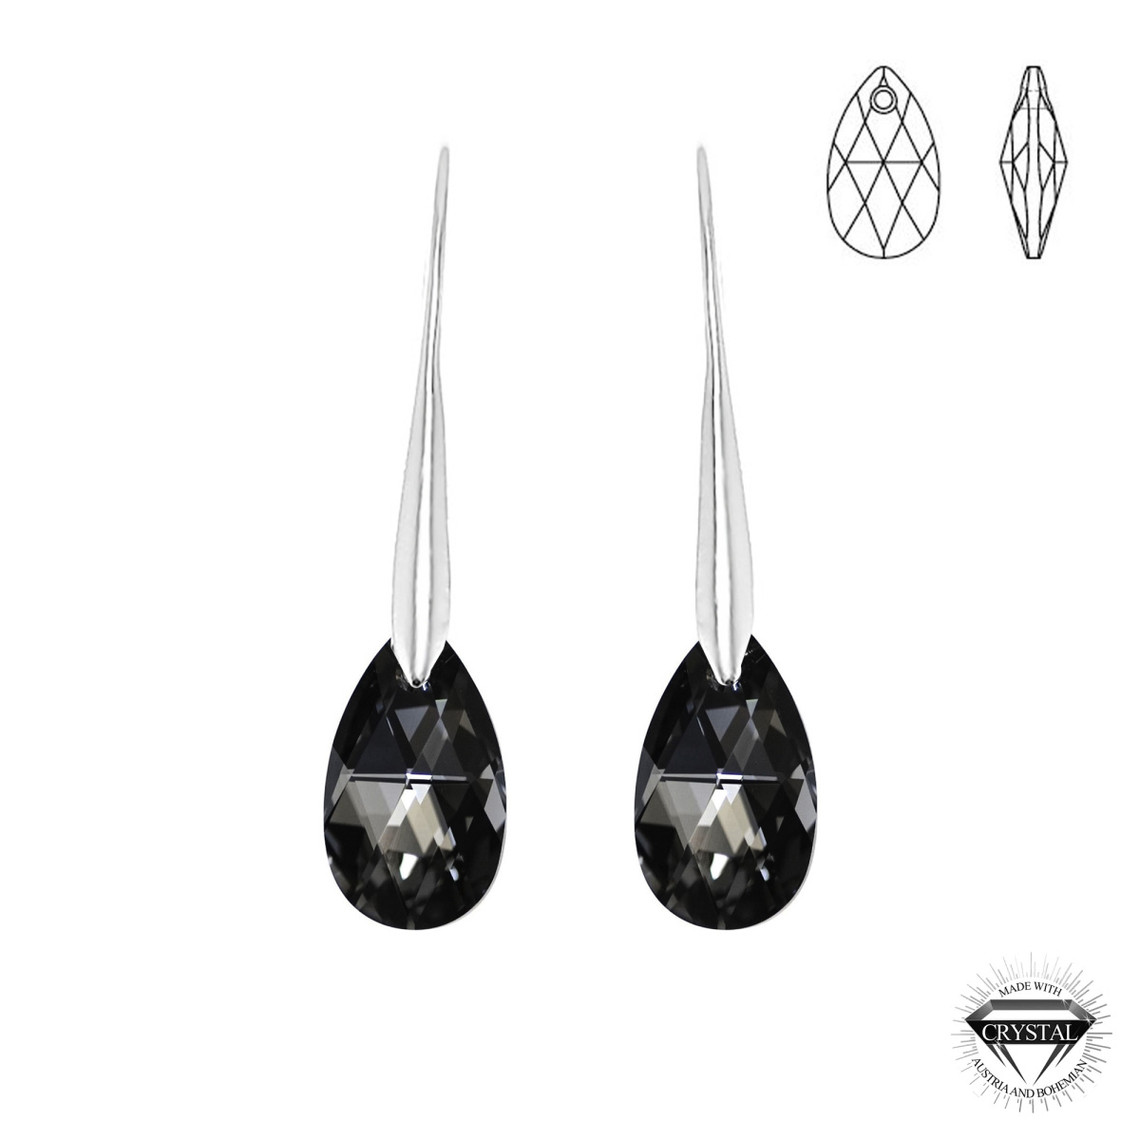 Boucles d'oreilles argentée cristaux Swarovski - So Charm